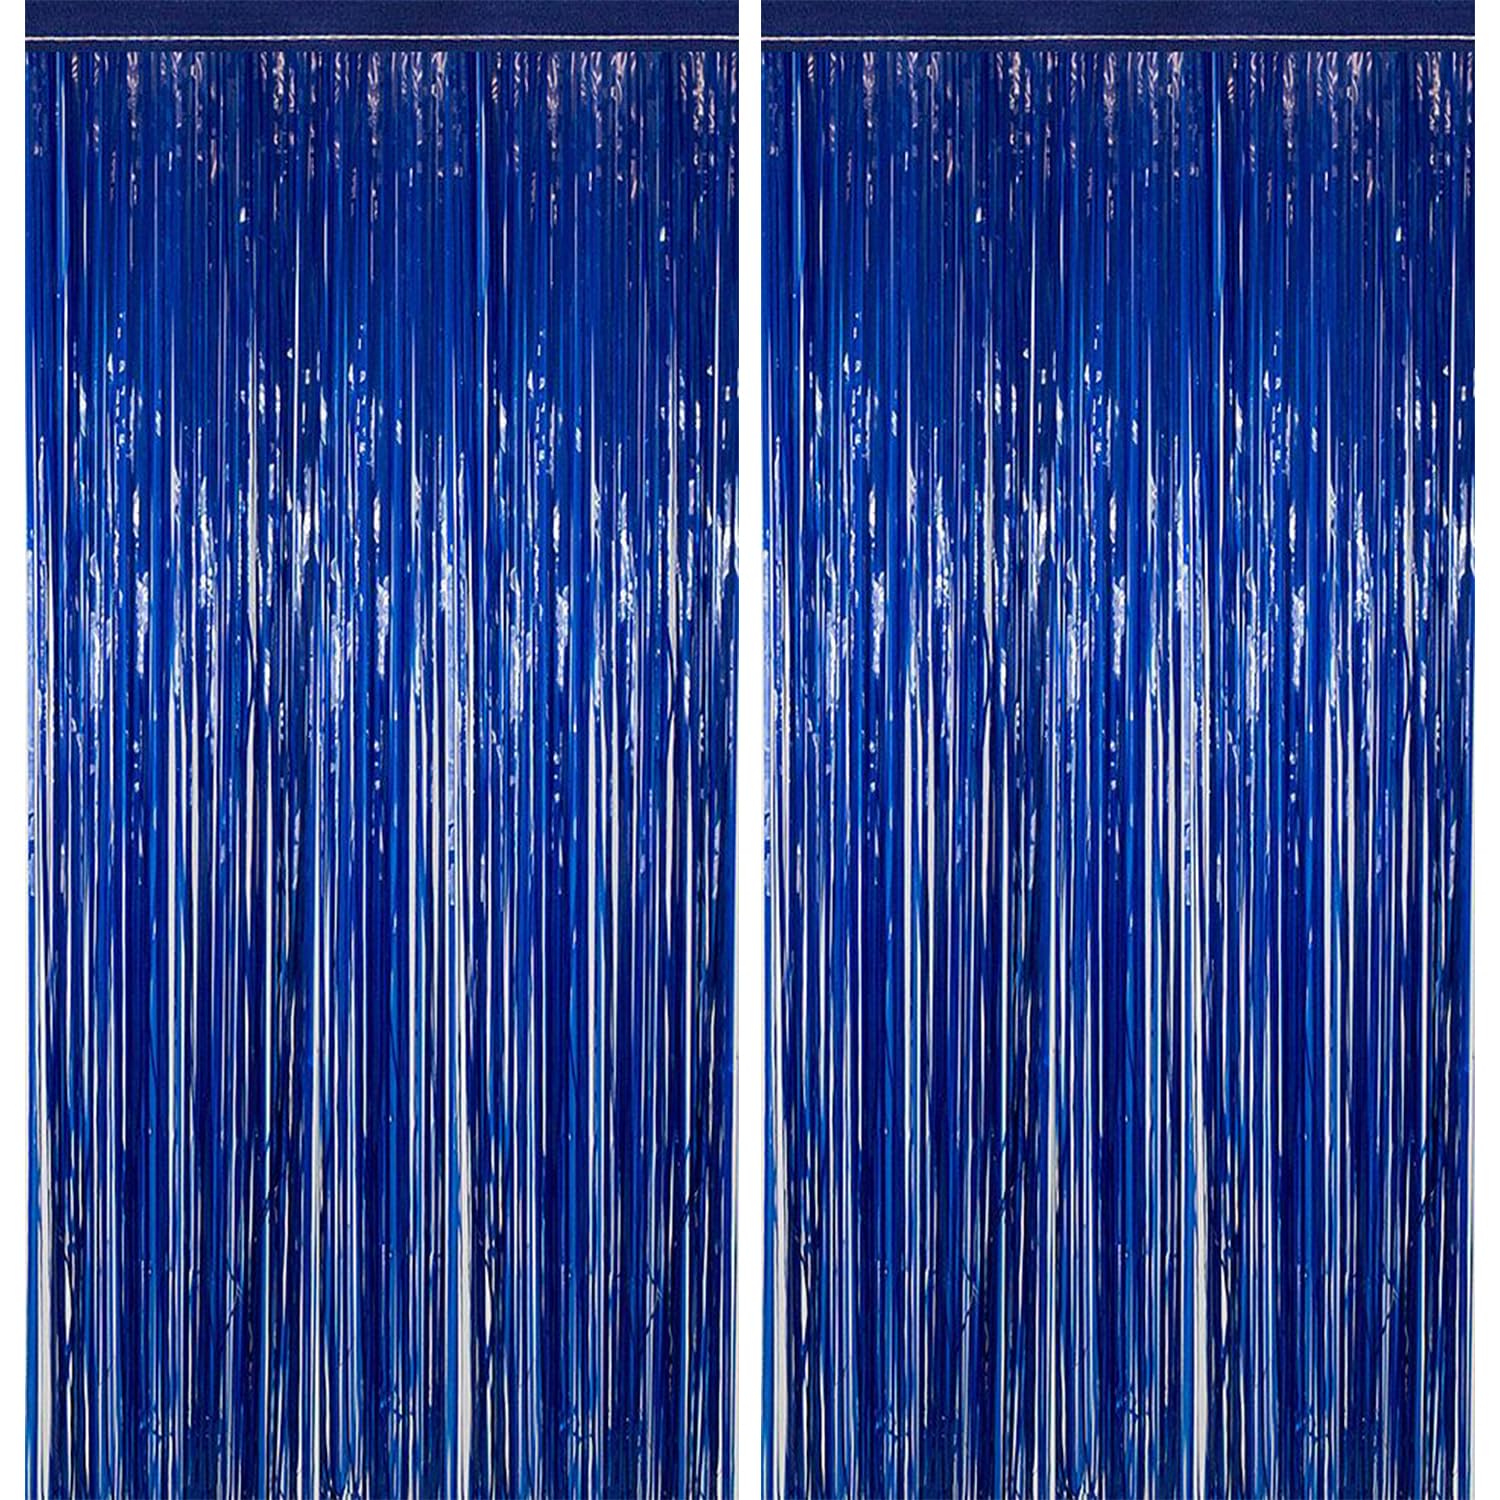 Dark Blue Foil Fringe Curtains